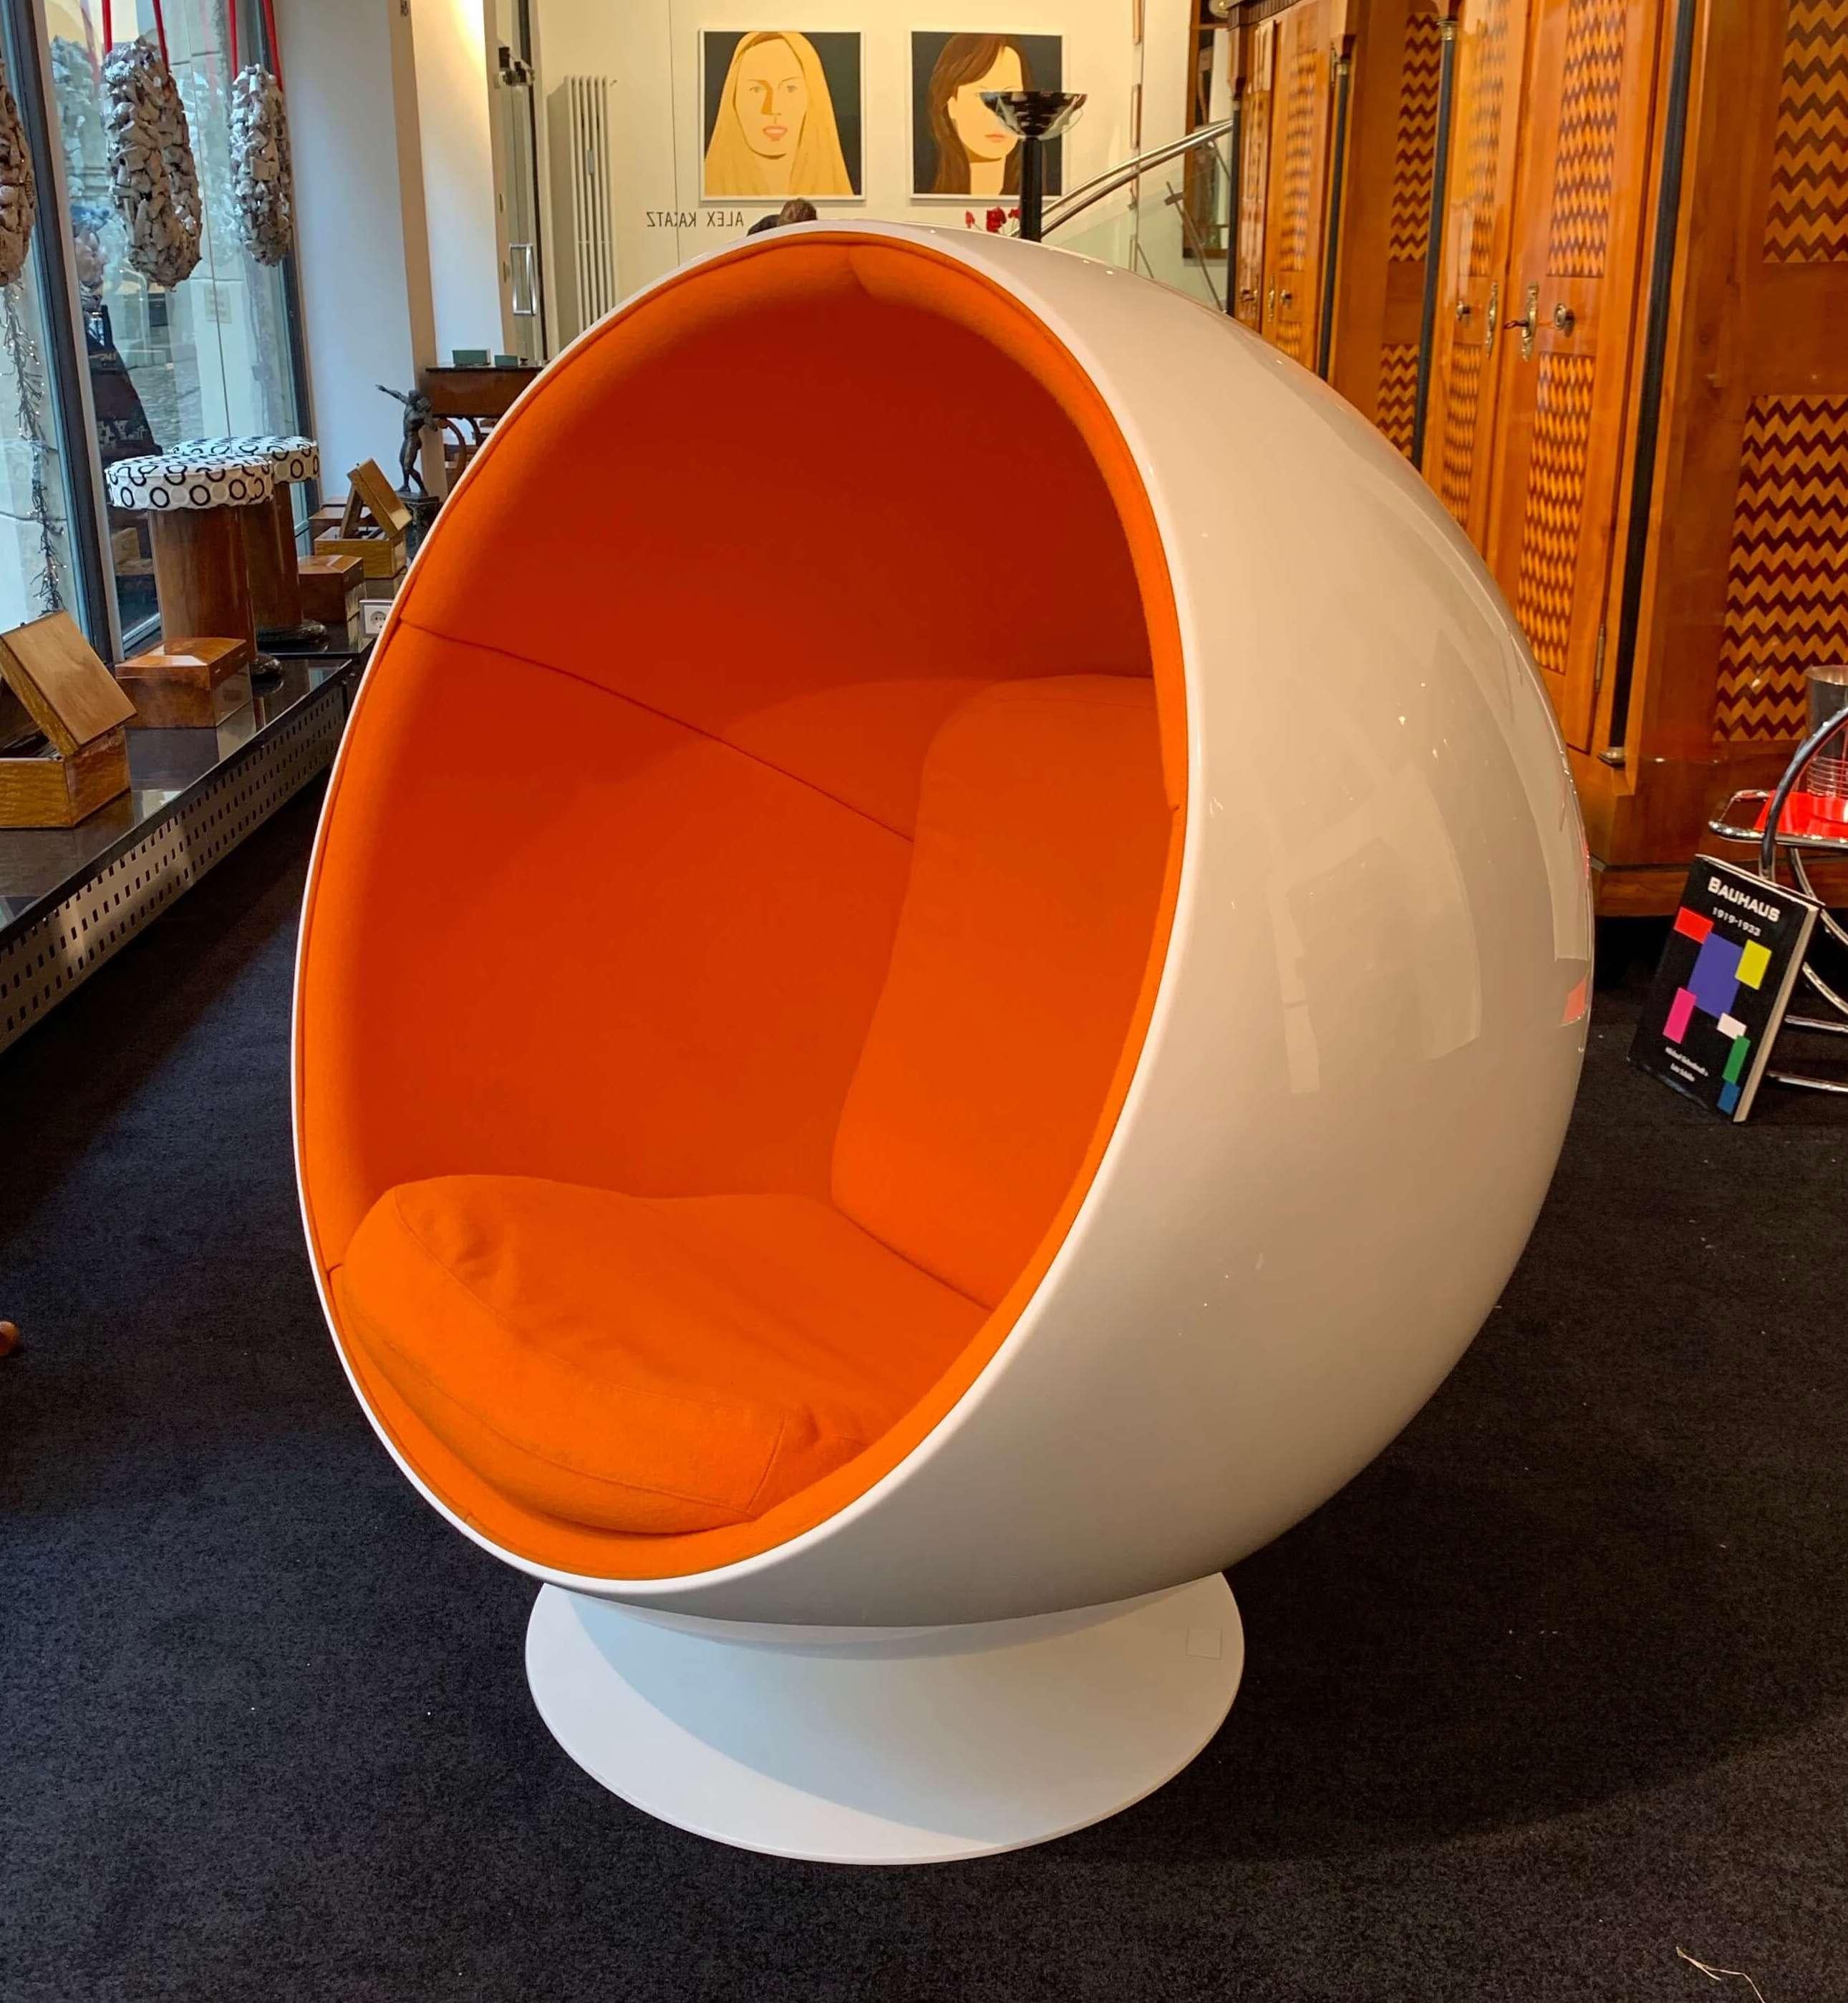 Space Age Ball Chair von Adelta:: Eero Aarino:: Orange und Weiß:: Finnland:: 1980/90er Jahre (Finnisch)